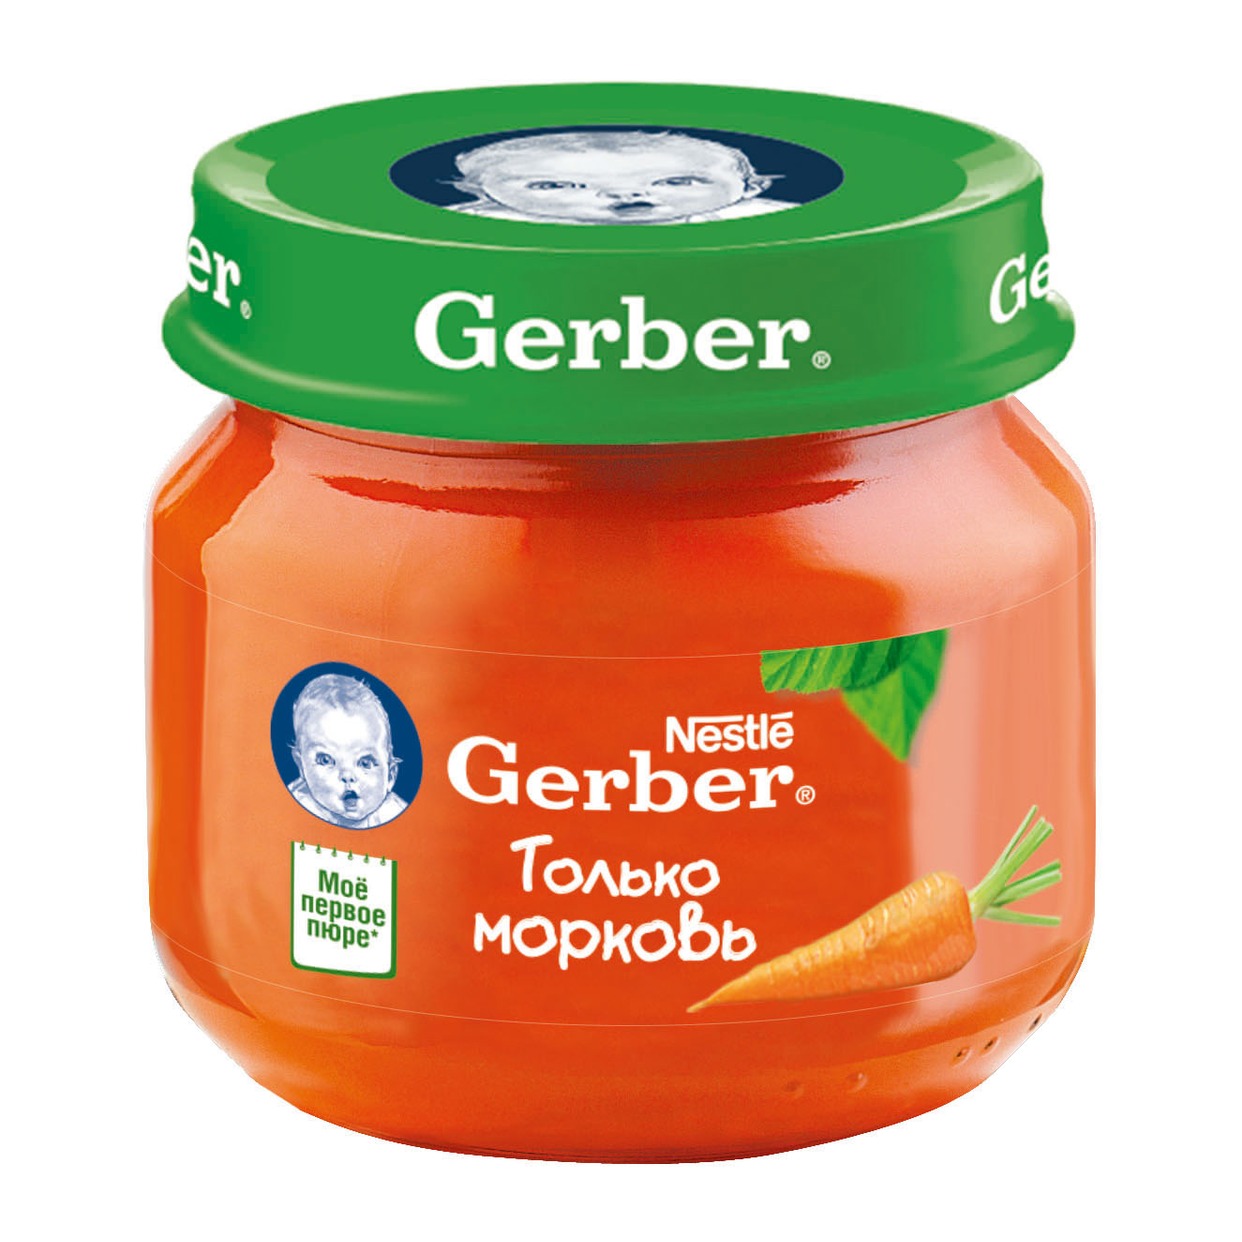 Пюре Gerber Морковь на овощной основе для детей с 4 месяцев 80г по акции в Пятерочке